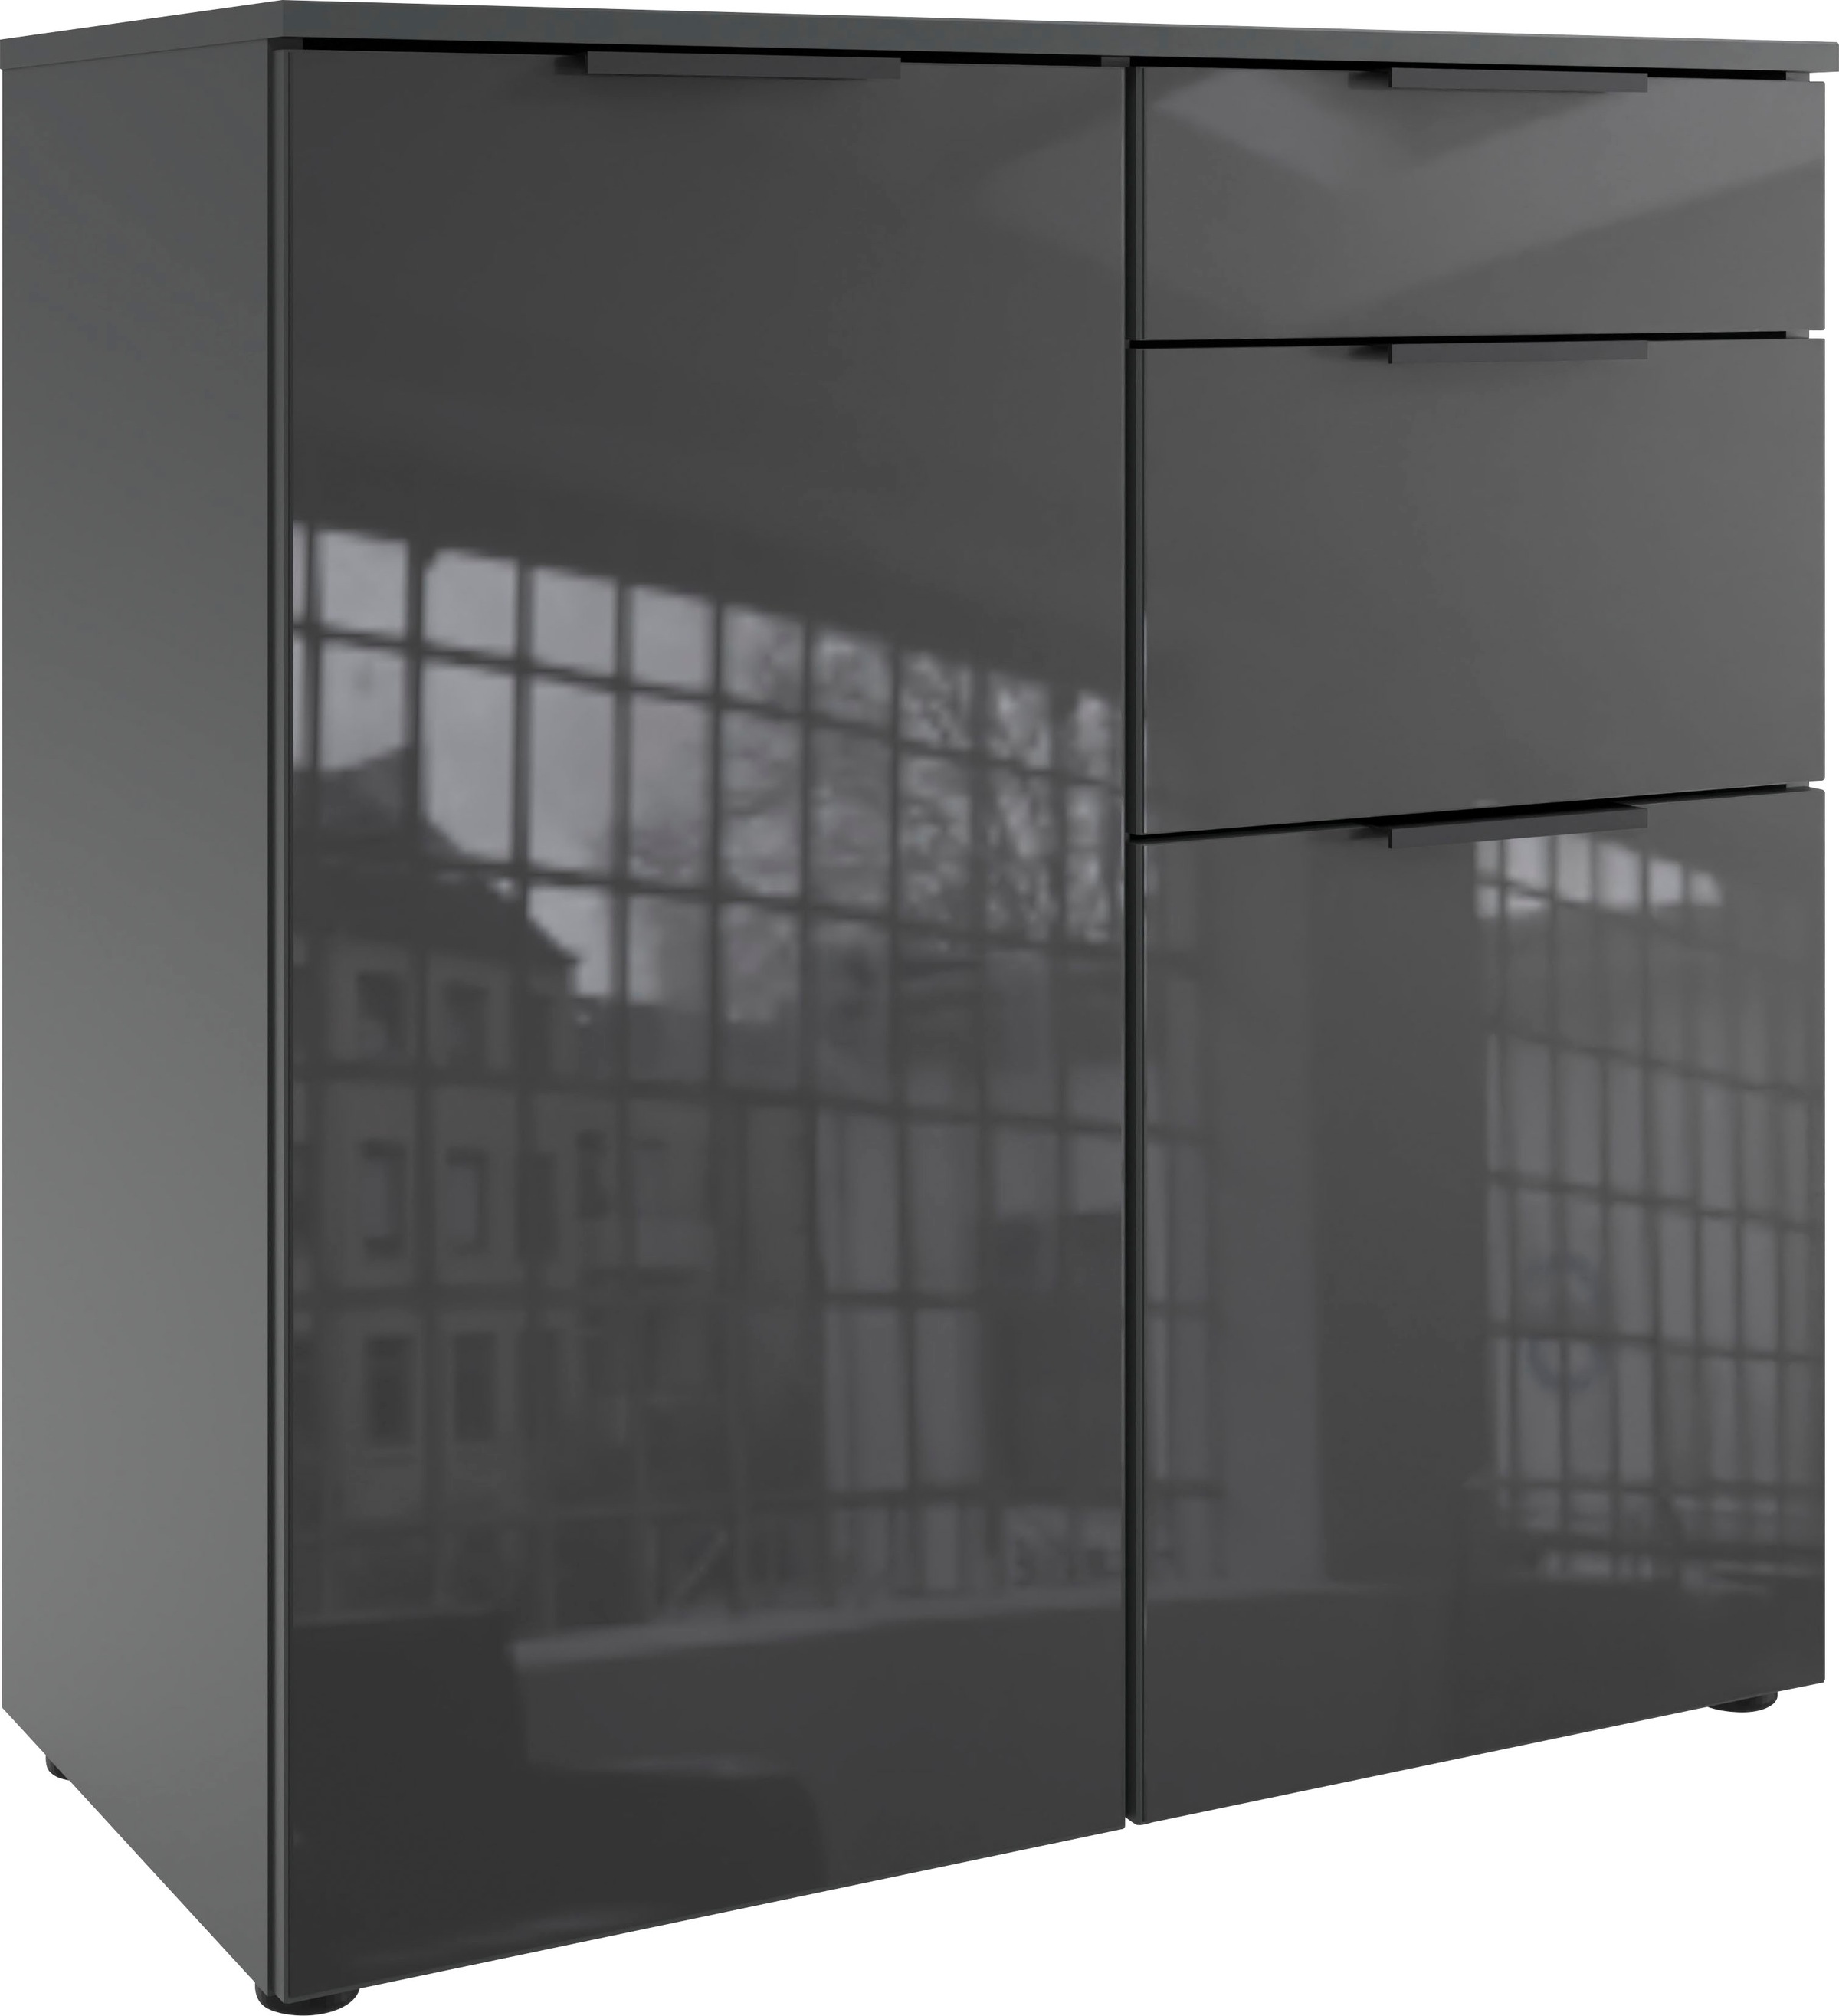 Wimex Kombikommode "Level36 black C by fresh to go", mit Glaselementen auf der Front, soft-close Funktion, 81cm breit